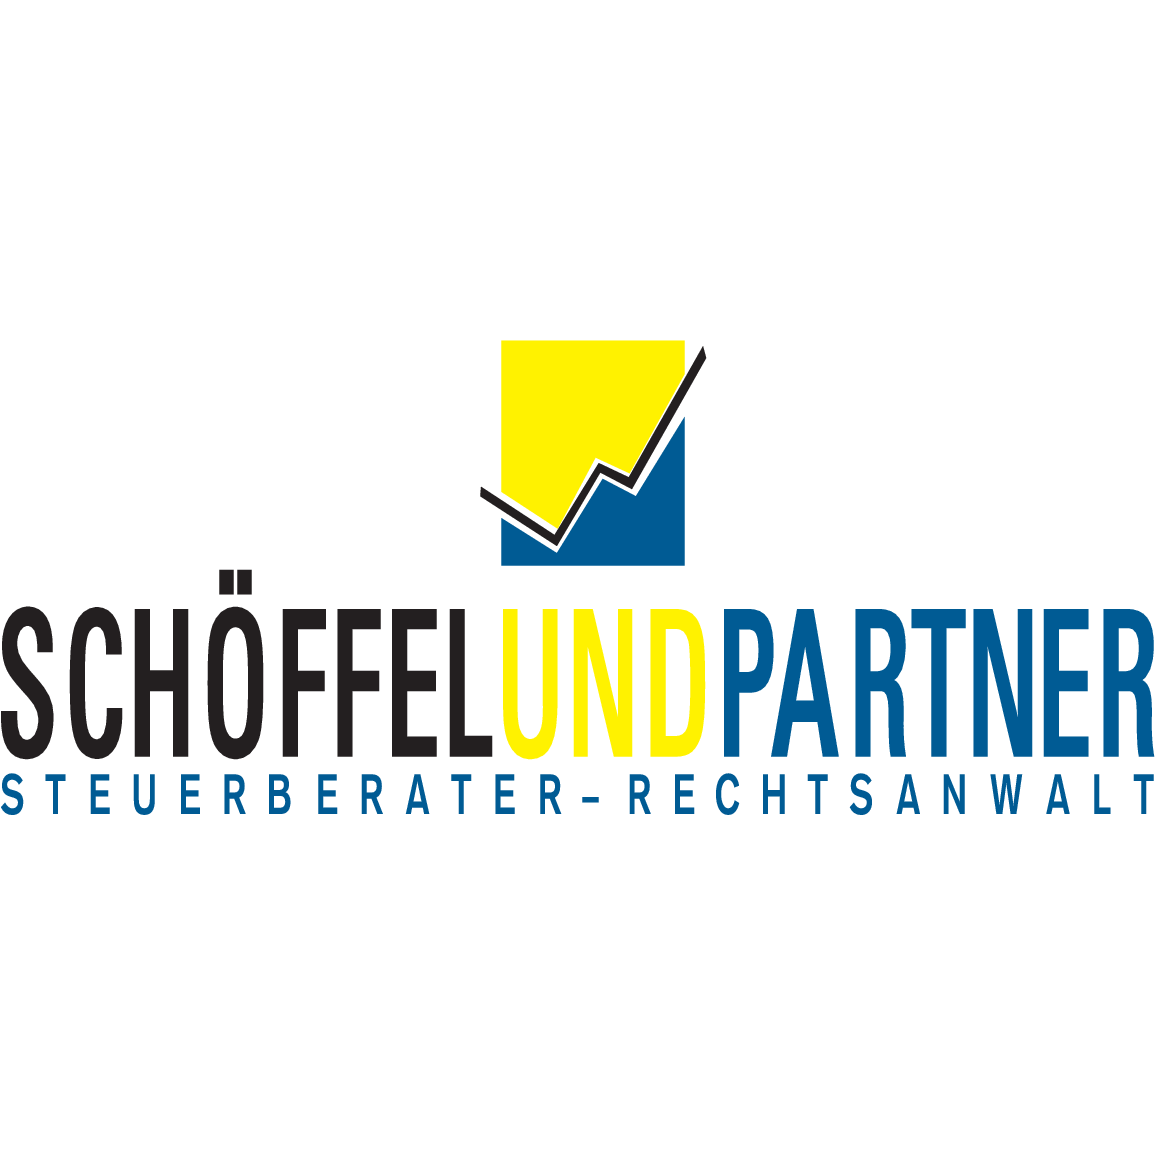 Schöffel & Partner in Bayreuth Steuerberater - Rechtsanwalt in Bayreuth - Logo